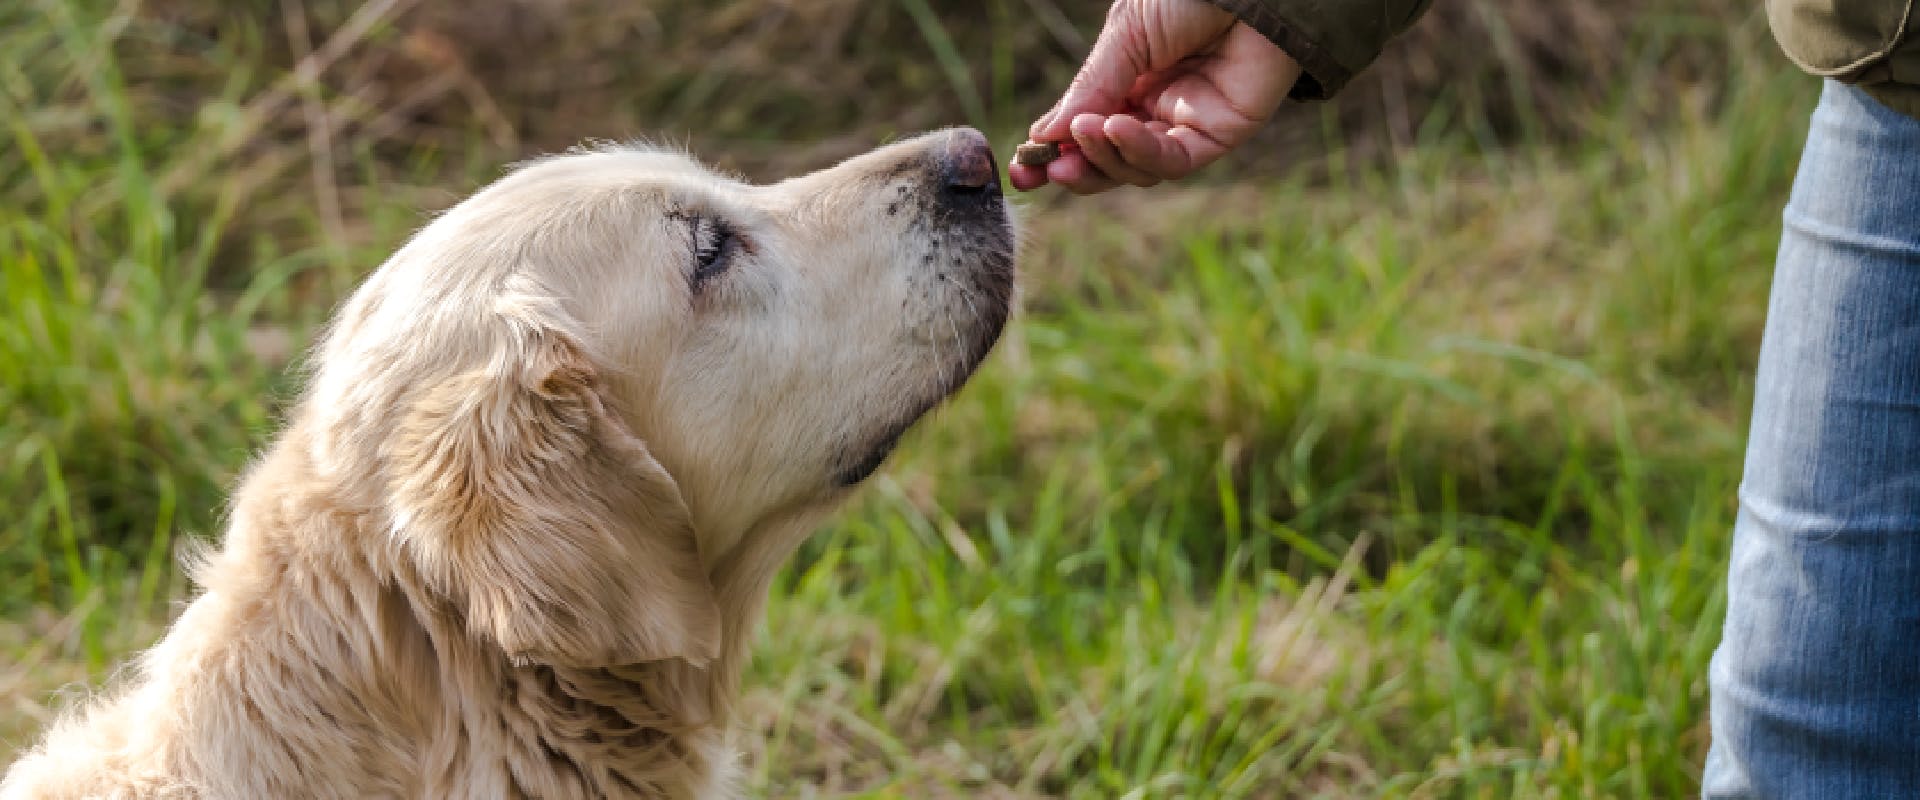 A Golden Retriever sniffs a dog treat.